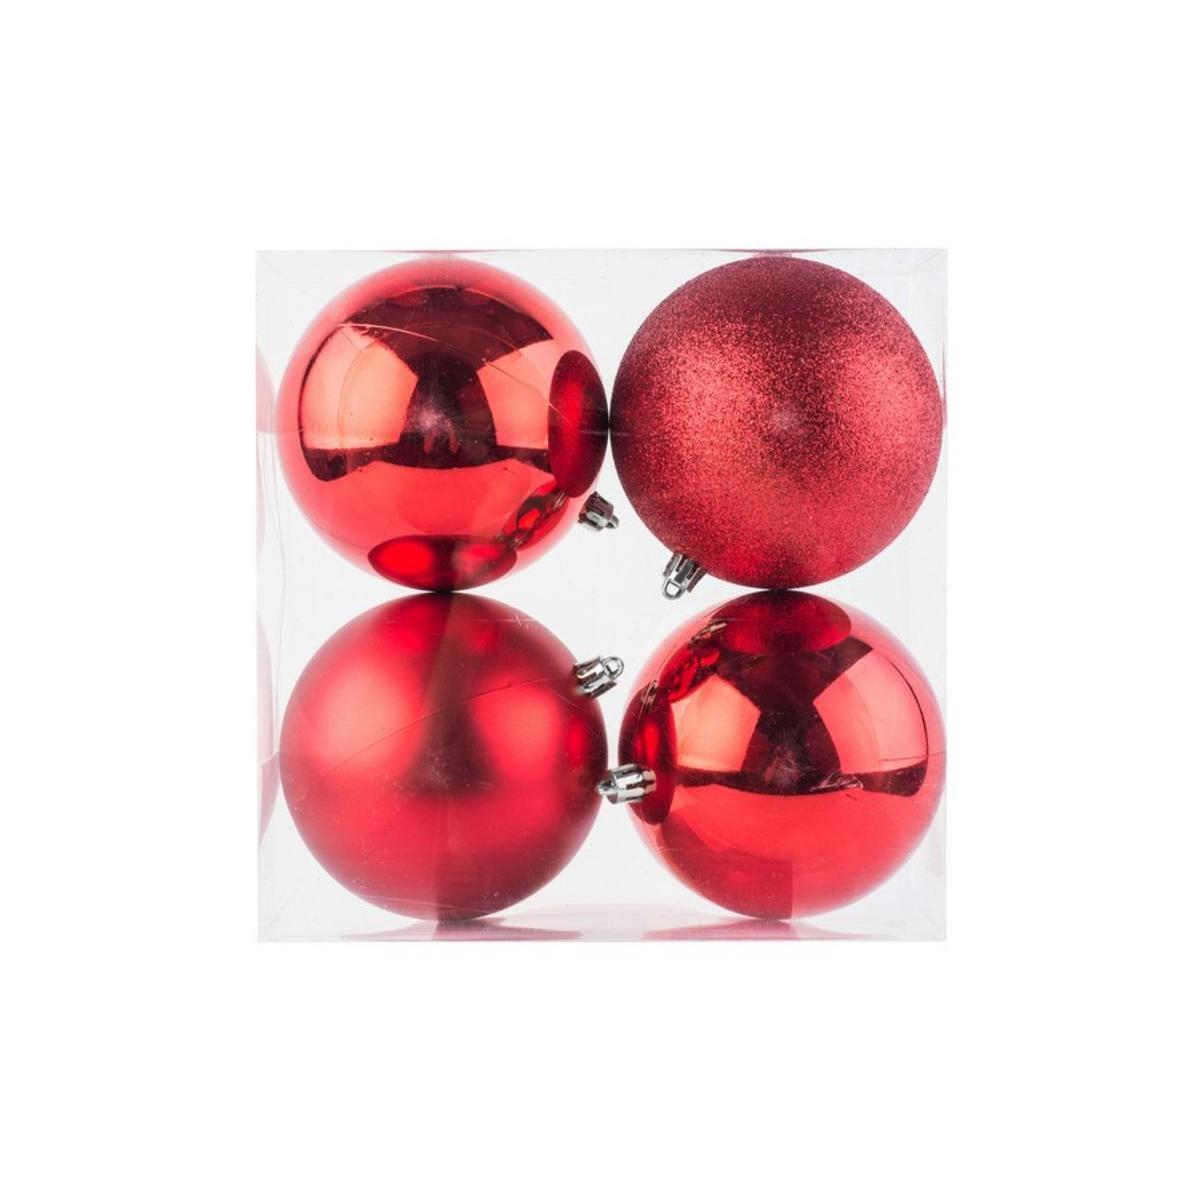 4 boules de Noël assorties - ø 10 cm - Différents coloris - Rouge